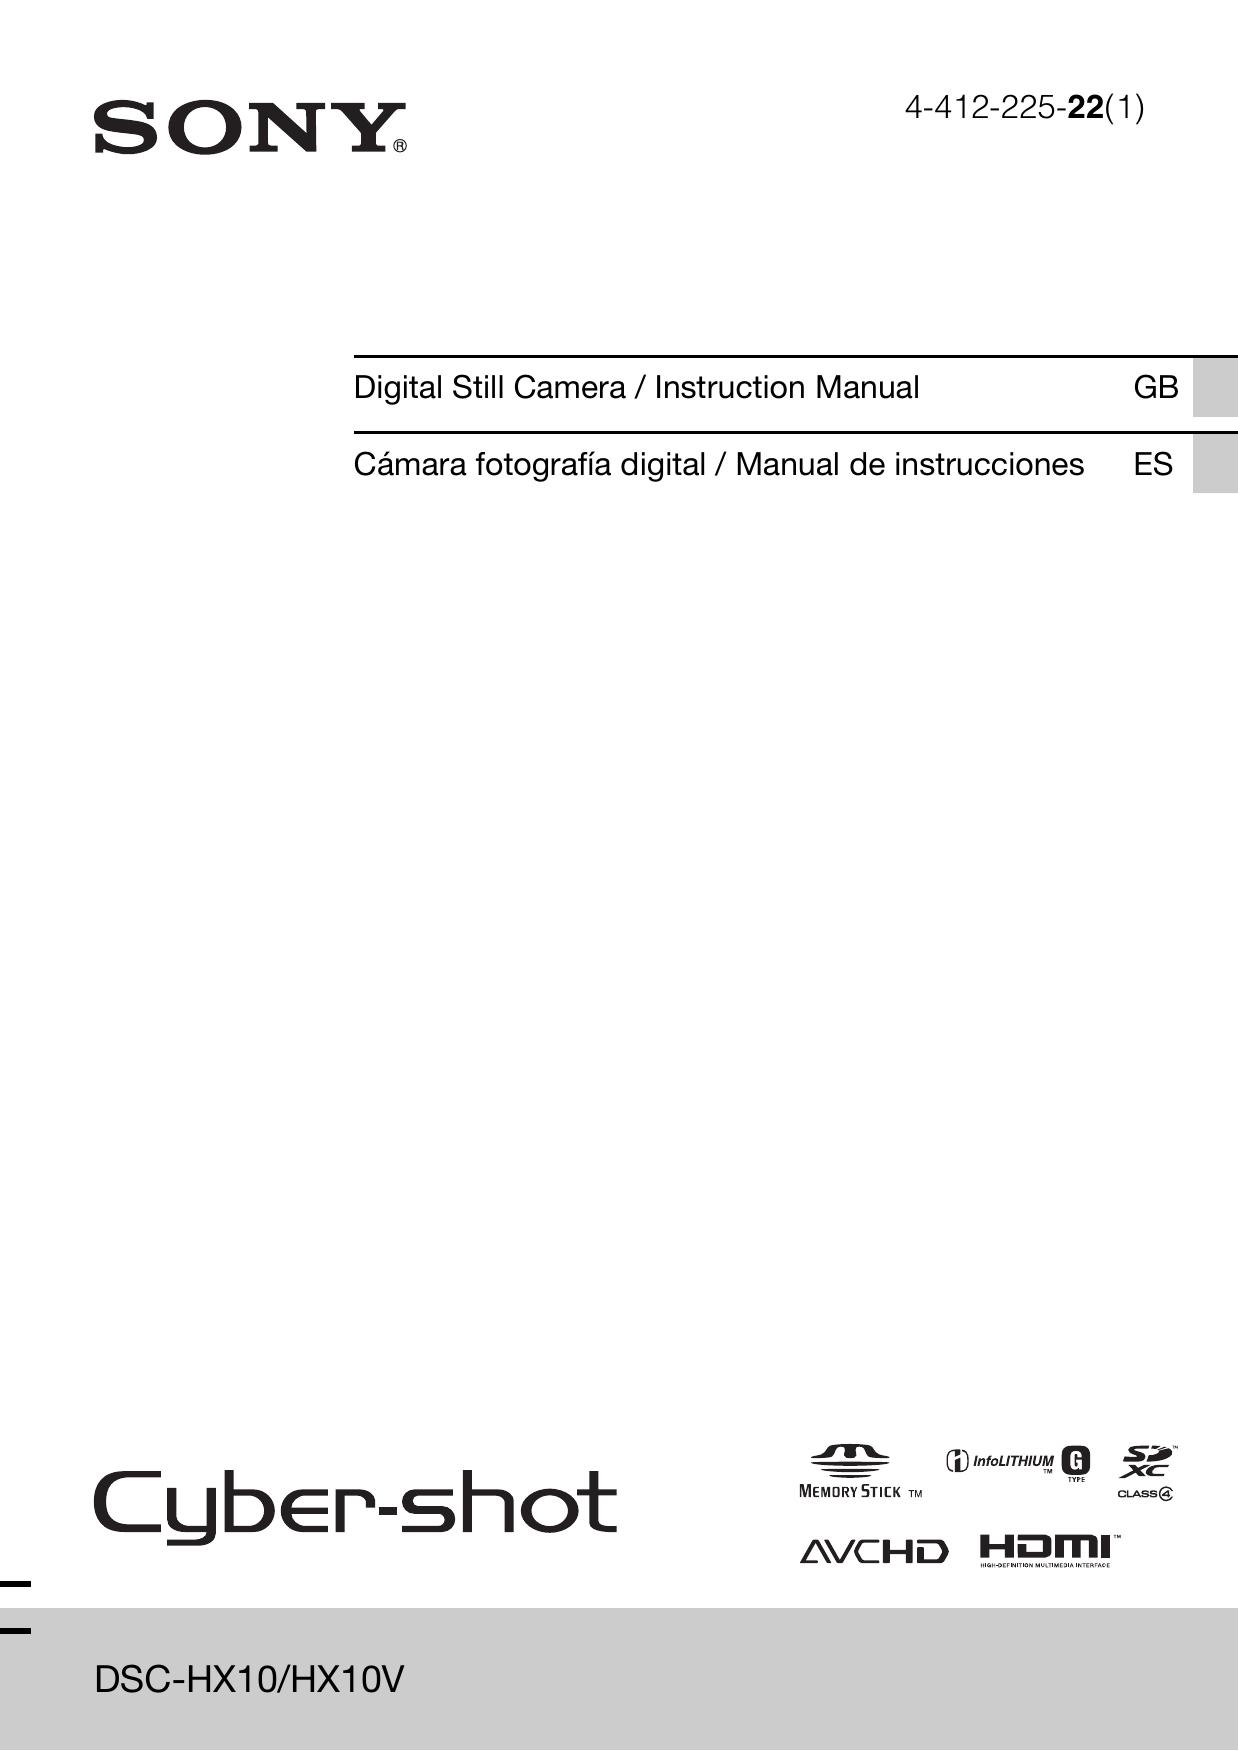 Sony 4-412-225-22(1) Digital Camera User Manual